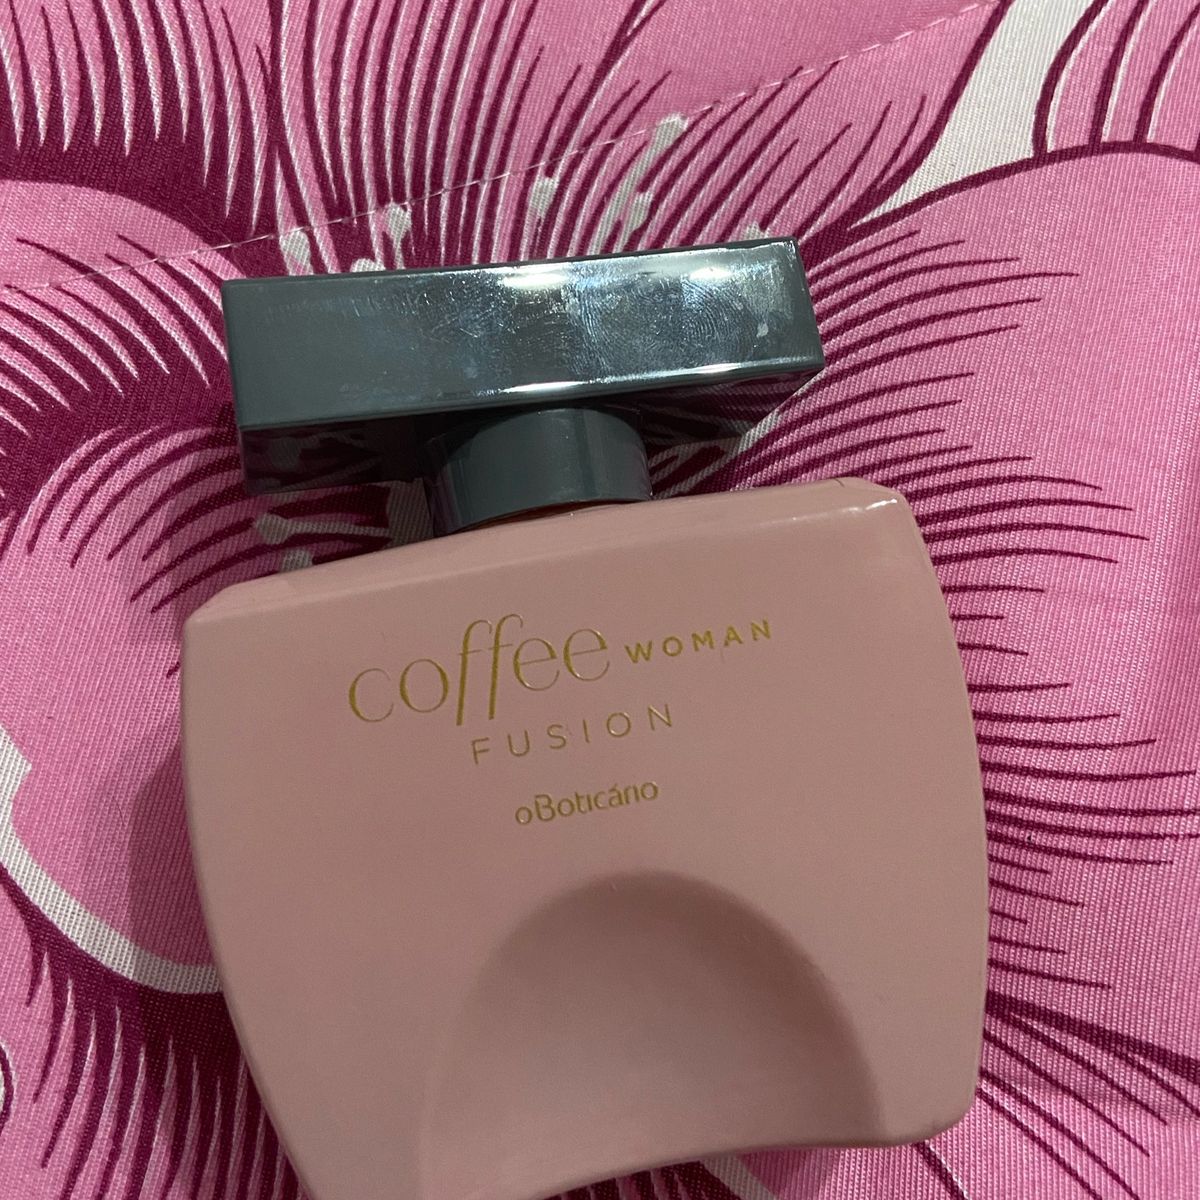 Oferta Coffee Woman Fusion Desodorante Colônia na O Boticário